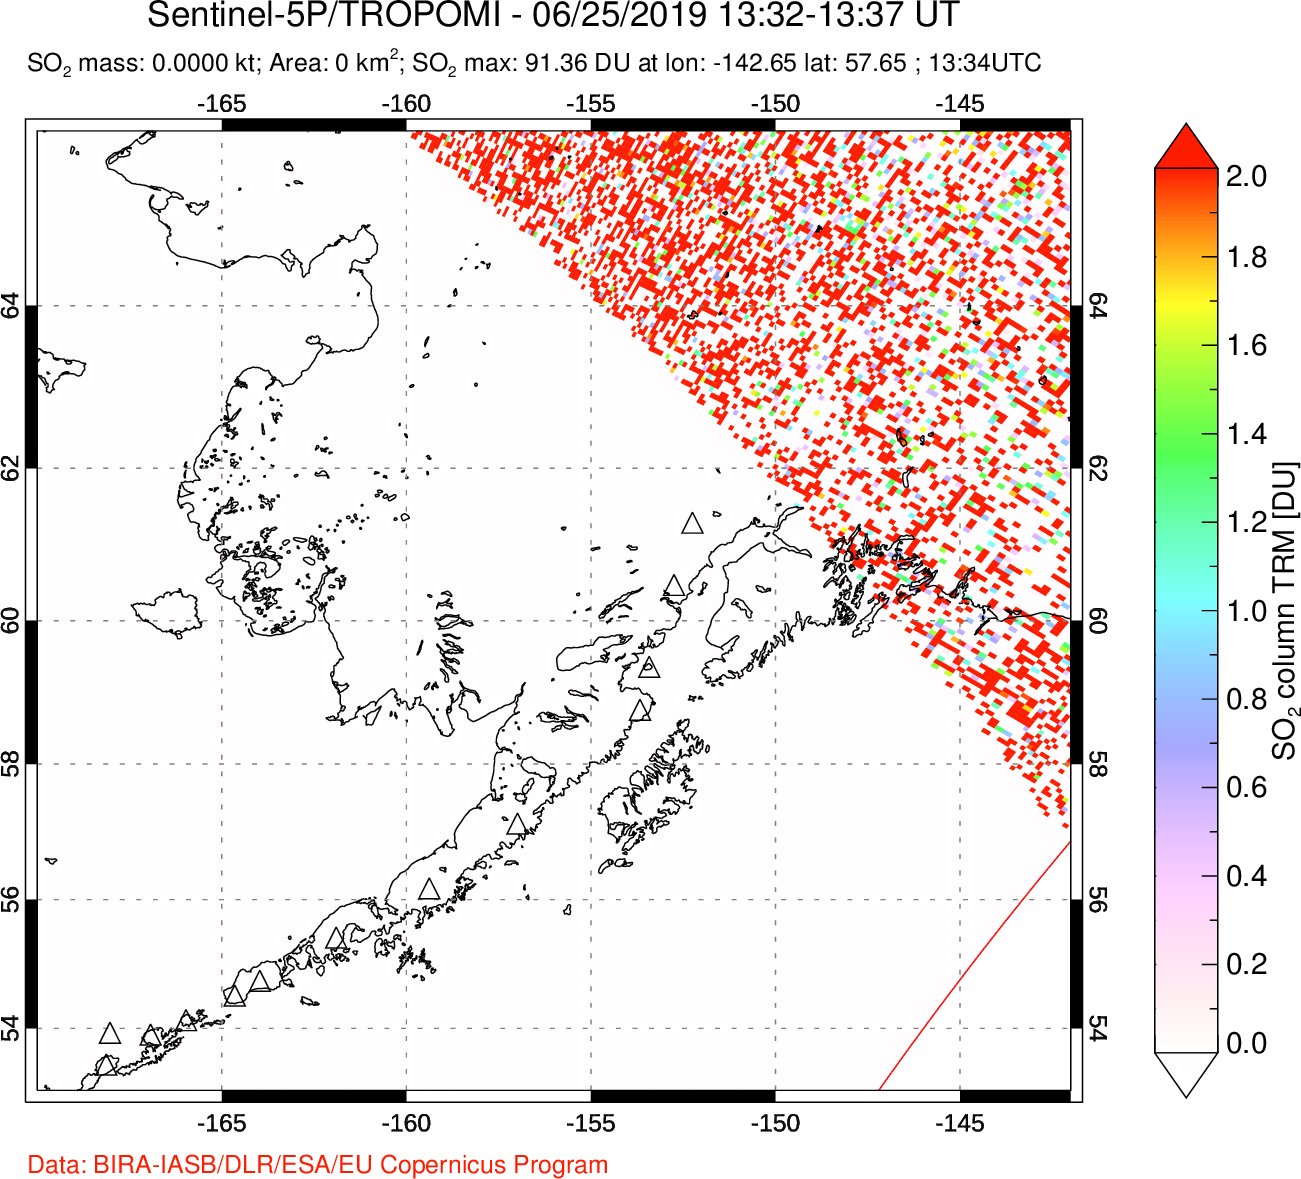 A sulfur dioxide image over Alaska, USA on Jun 25, 2019.